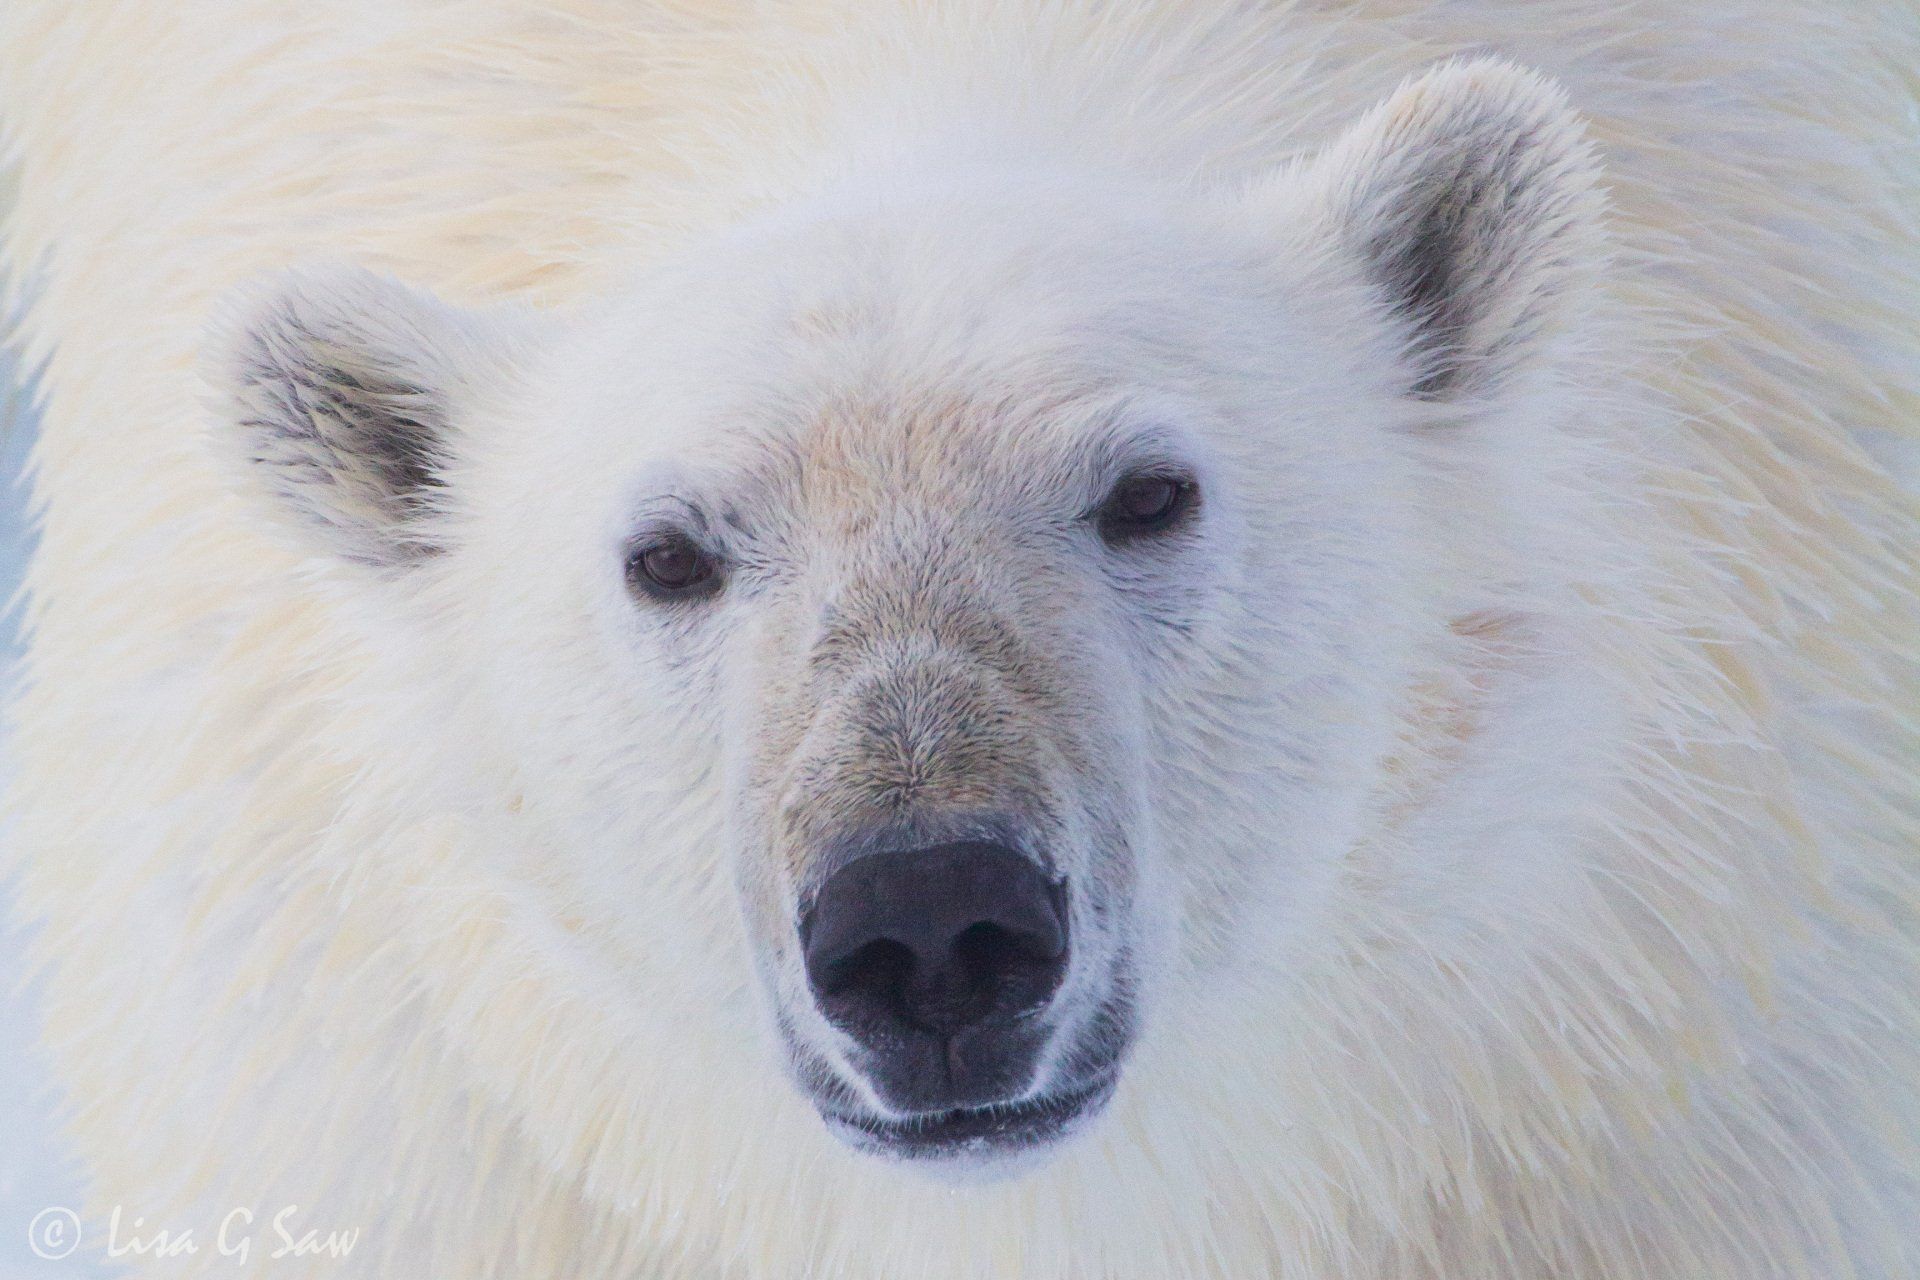 Close up of Polar Bear face